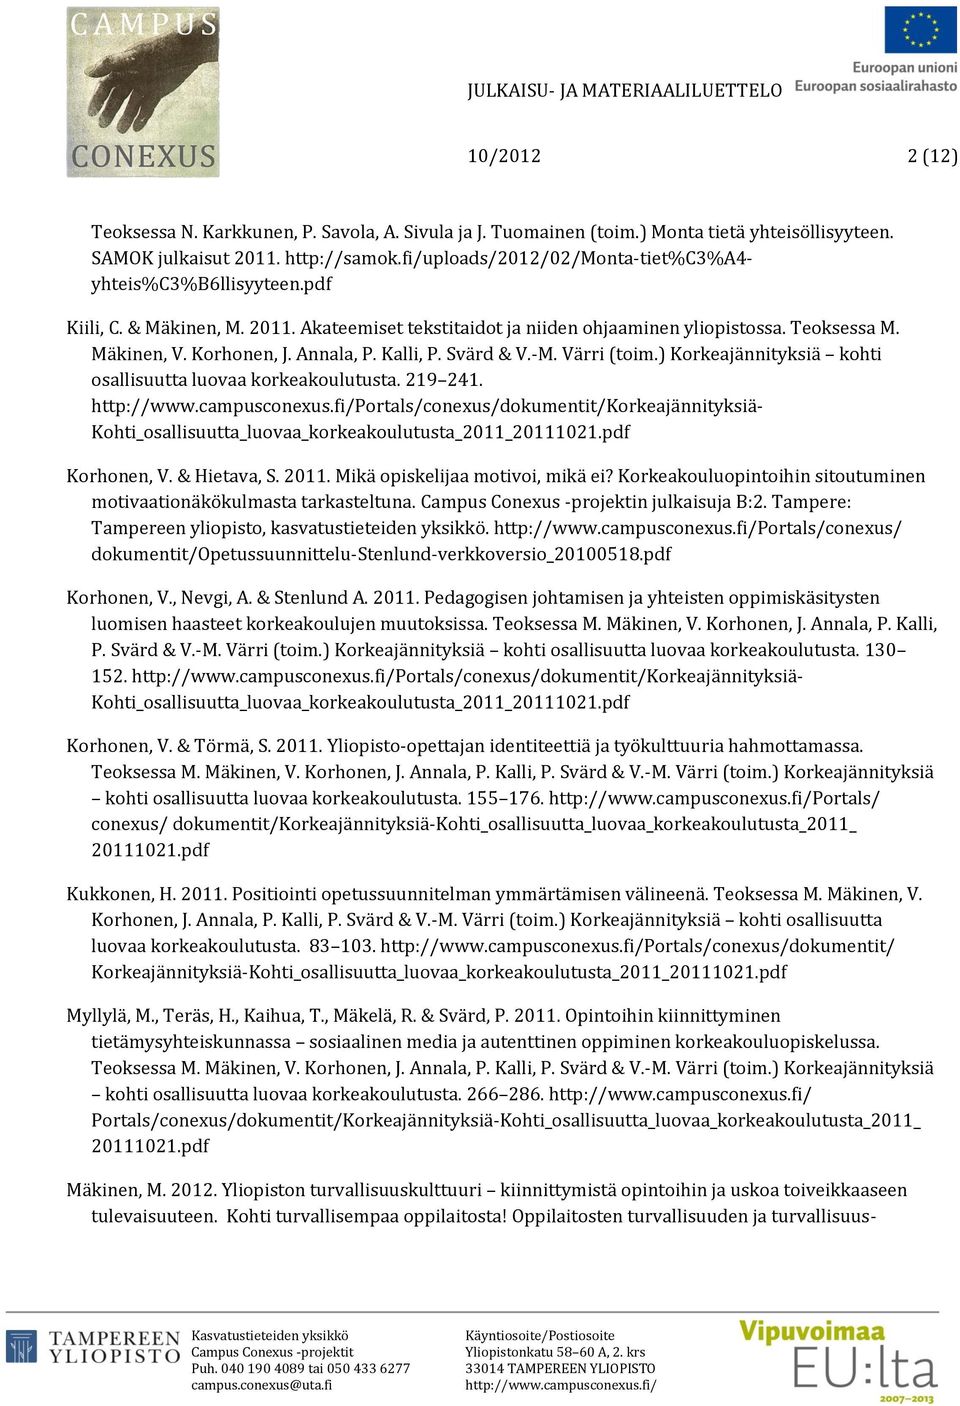 Annala, P. Kalli, P. Svärd & V.-M. Värri (toim.) Korkeajännityksiä kohti osallisuutta luovaa korkeakoulutusta. 219 241. Portals/conexus/dokumentit/Korkeajännityksiä- Korhonen, V. & Hietava, S. 2011.